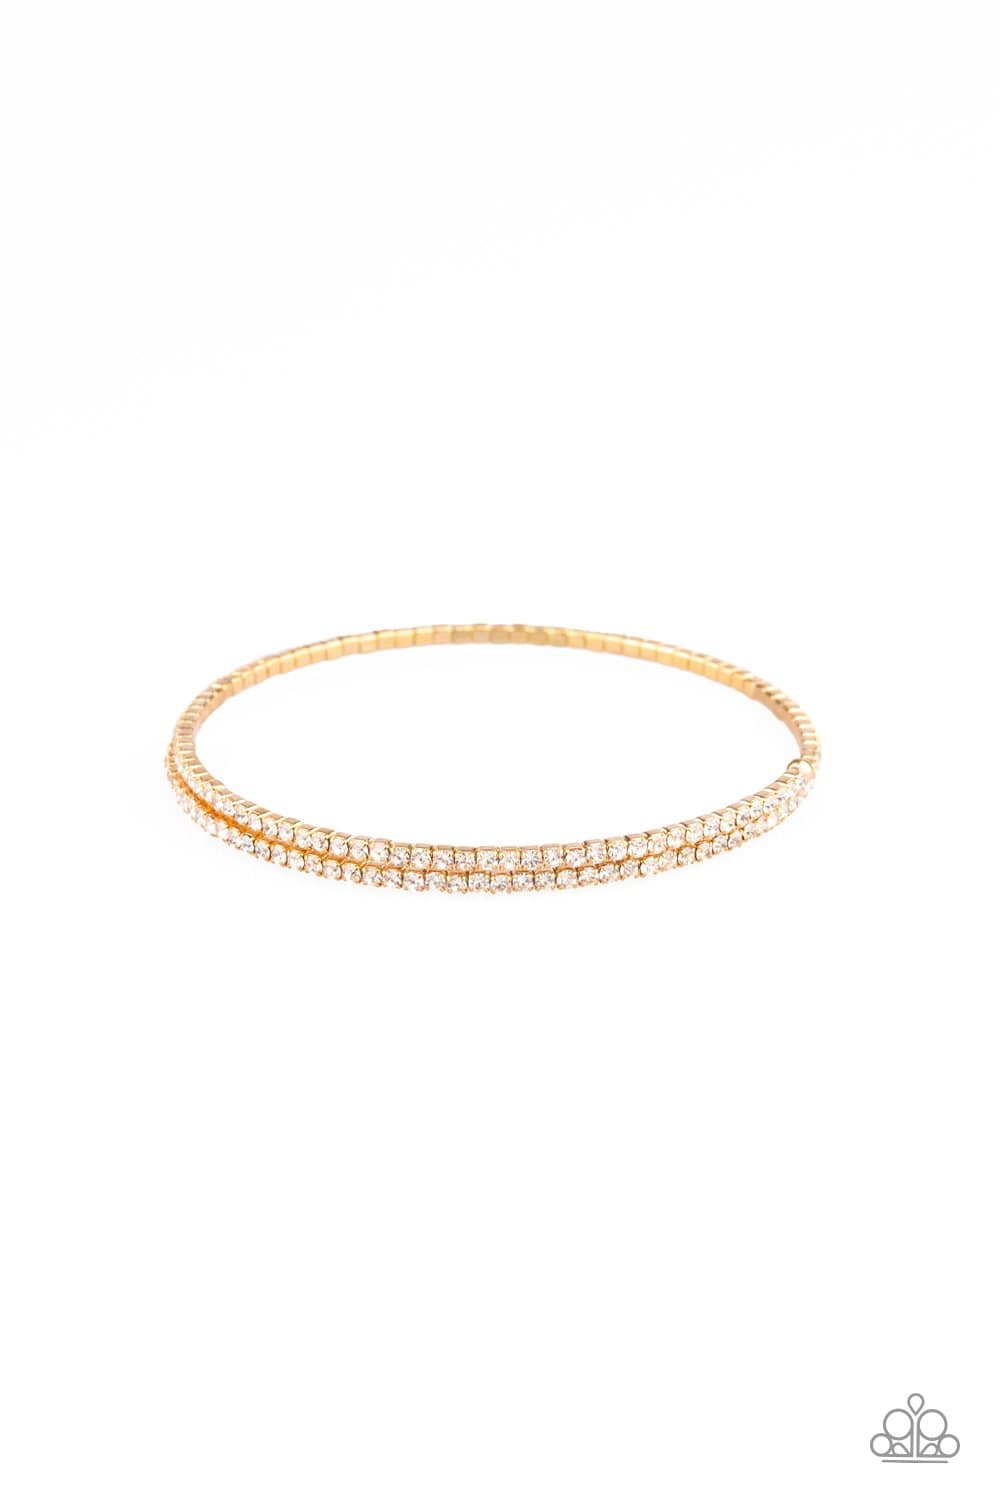 Sleek Sparkle - Gold - Paparazzi Bracelet